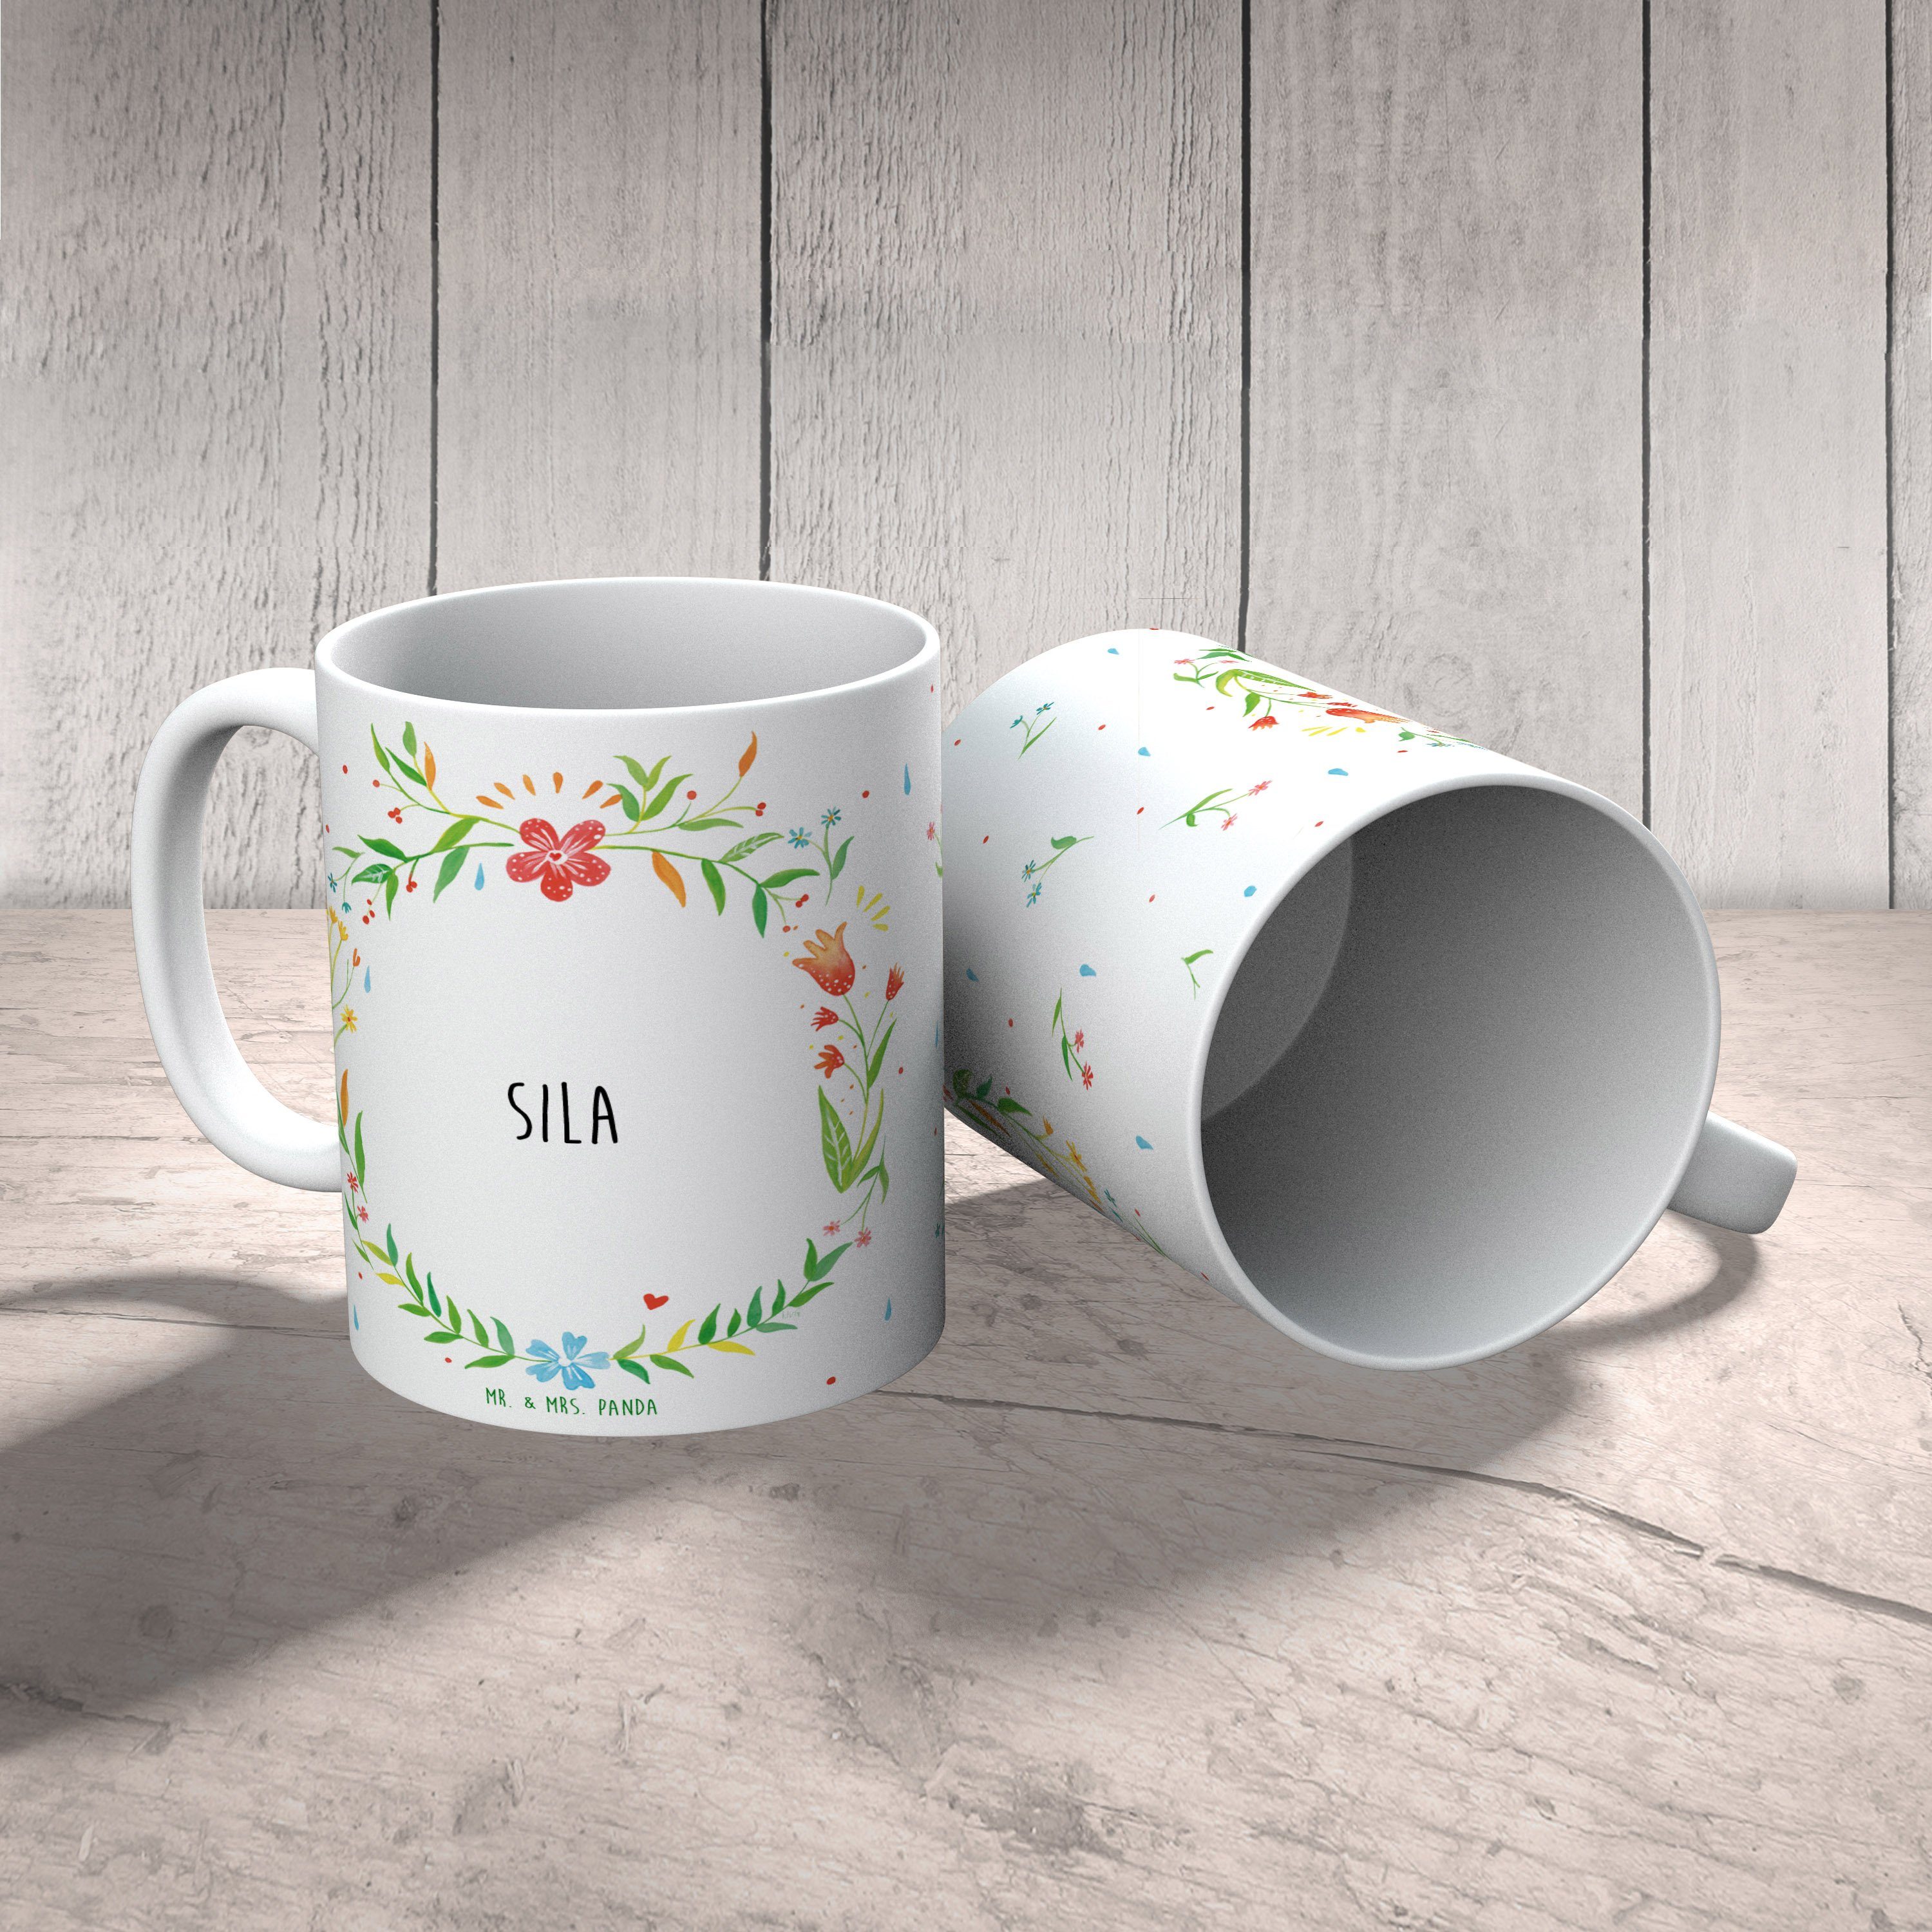 Mr. & Mrs. Panda Tasse Tasse Tasse Sprüche, Motive, - Geschenk Geschenk, Sila Keramik Becher, Tasse